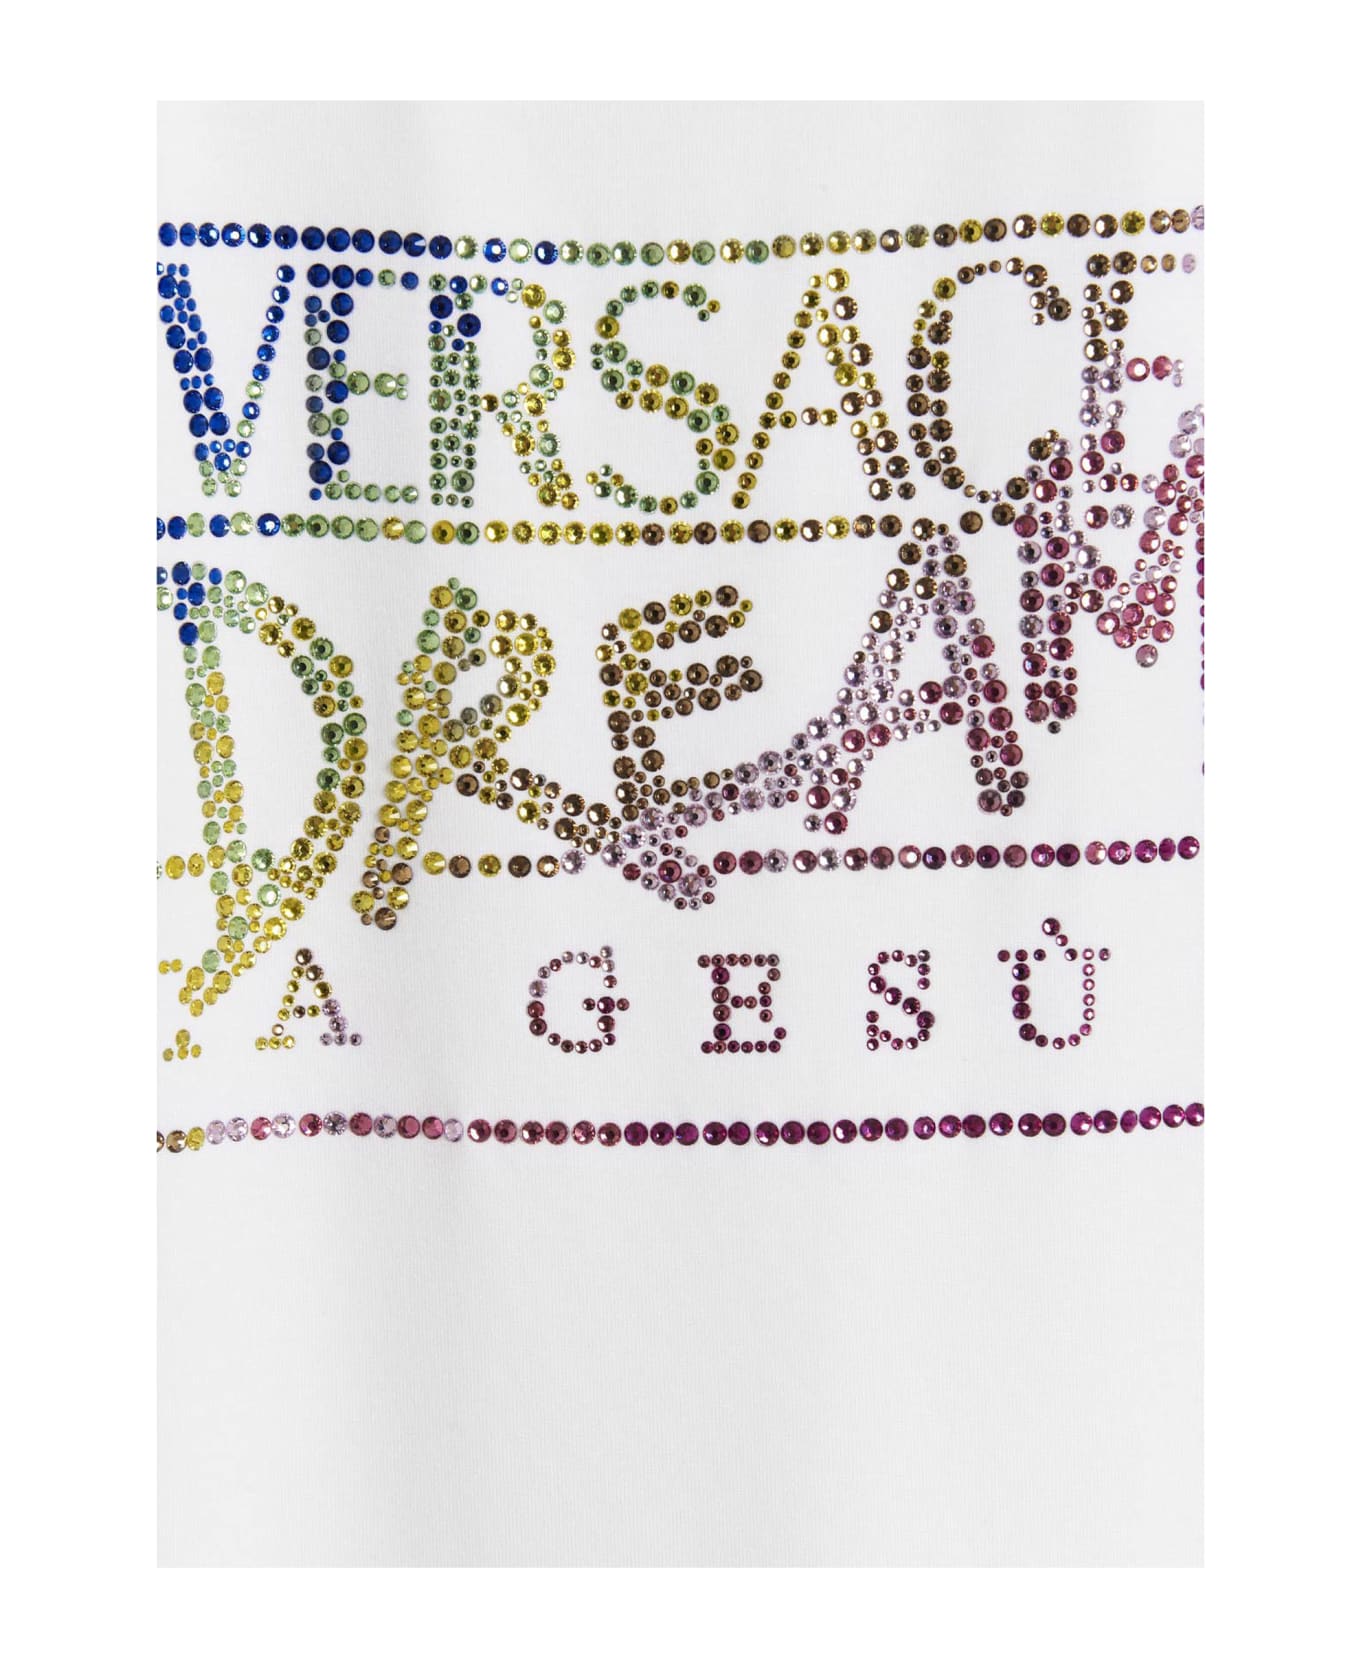 Versace 'dream  T-shirt - White